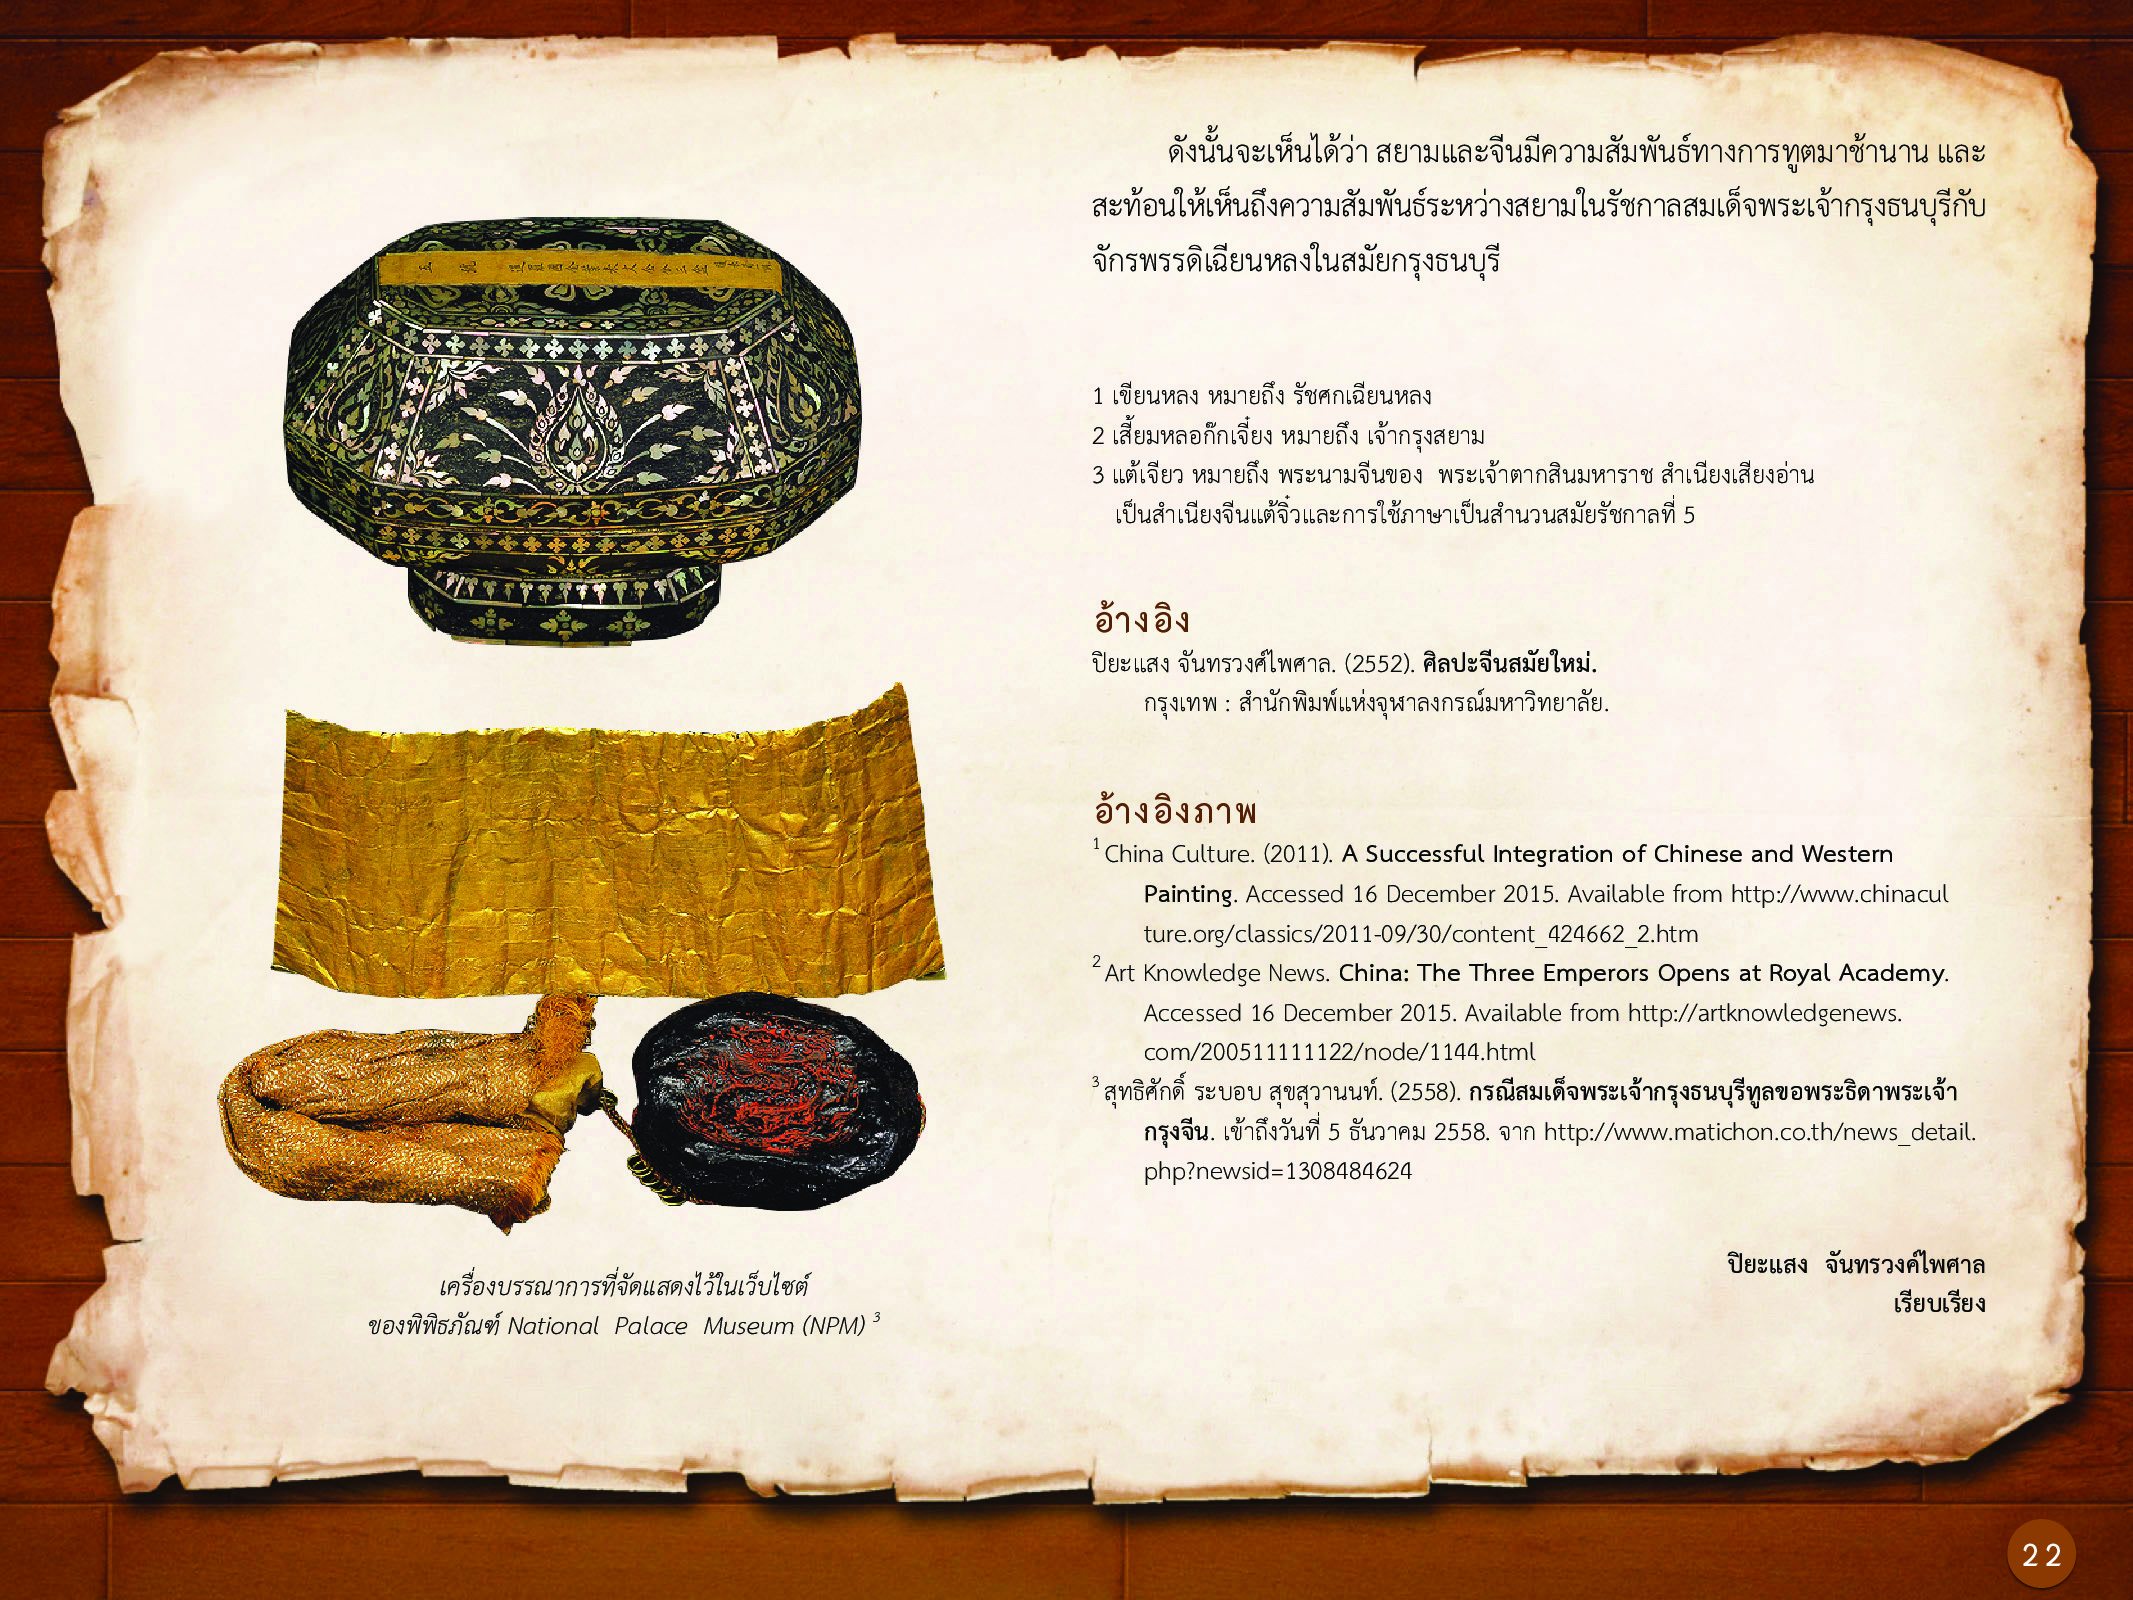 ประวัติศาสตร์กรุงธนบุรี ./images/history_dhonburi/22.jpg